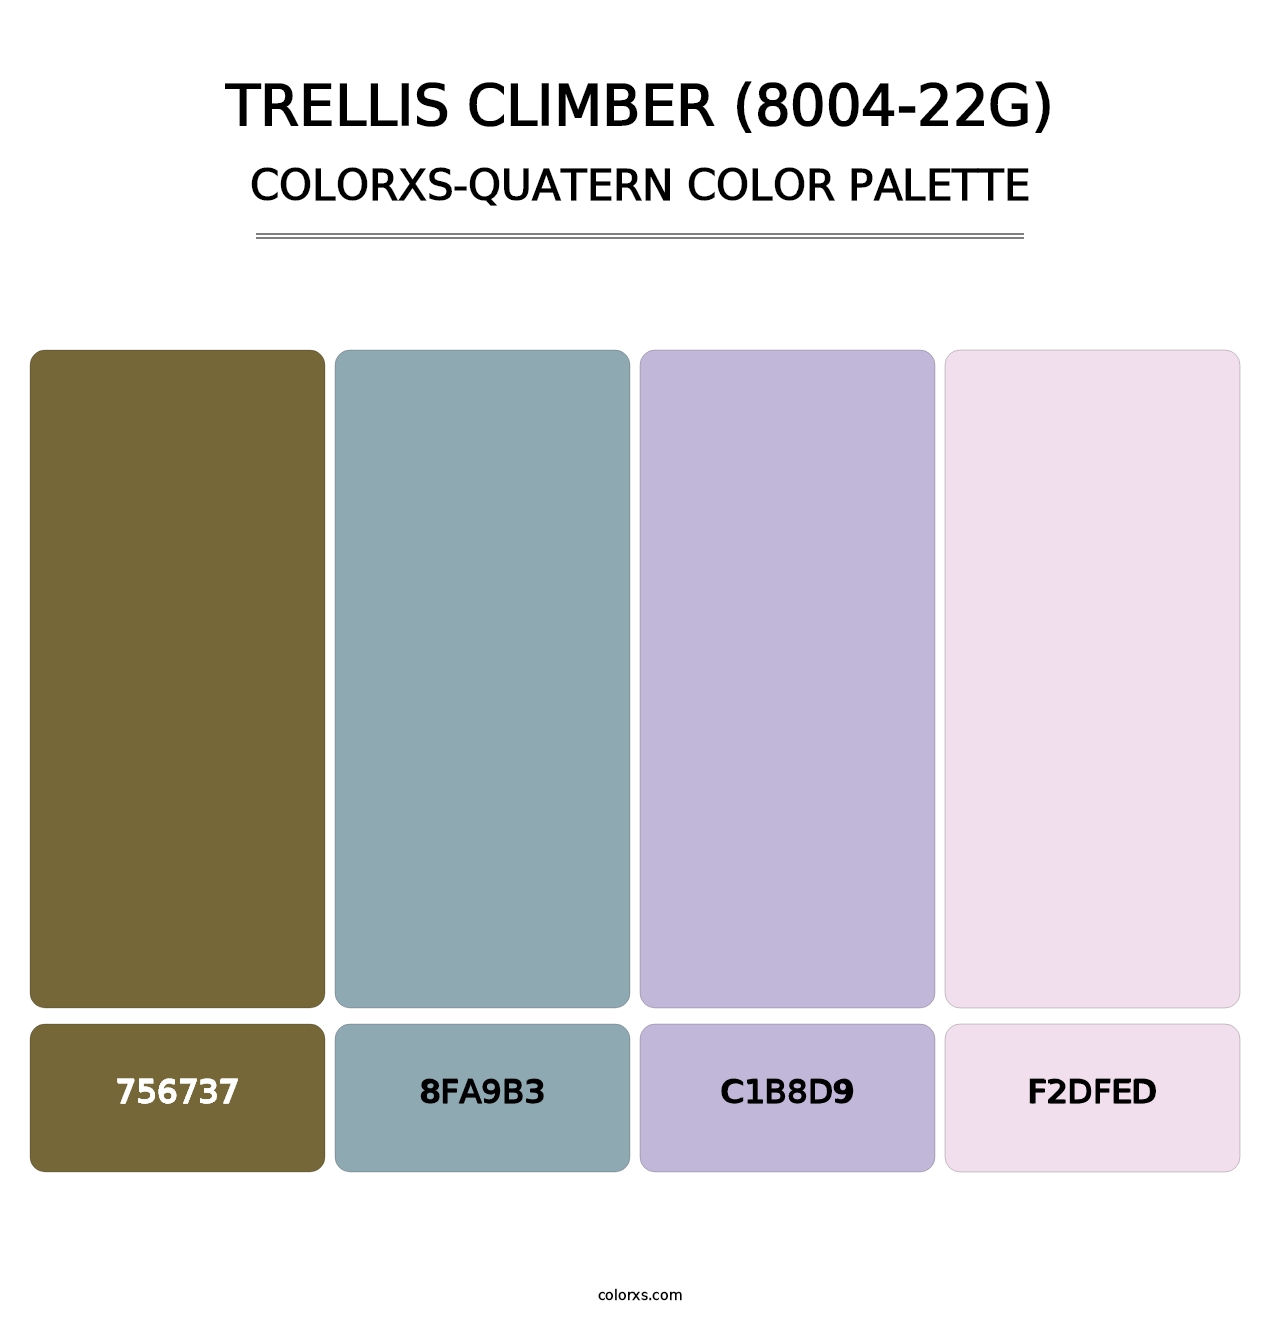 Trellis Climber (8004-22G) - Colorxs Quatern Palette